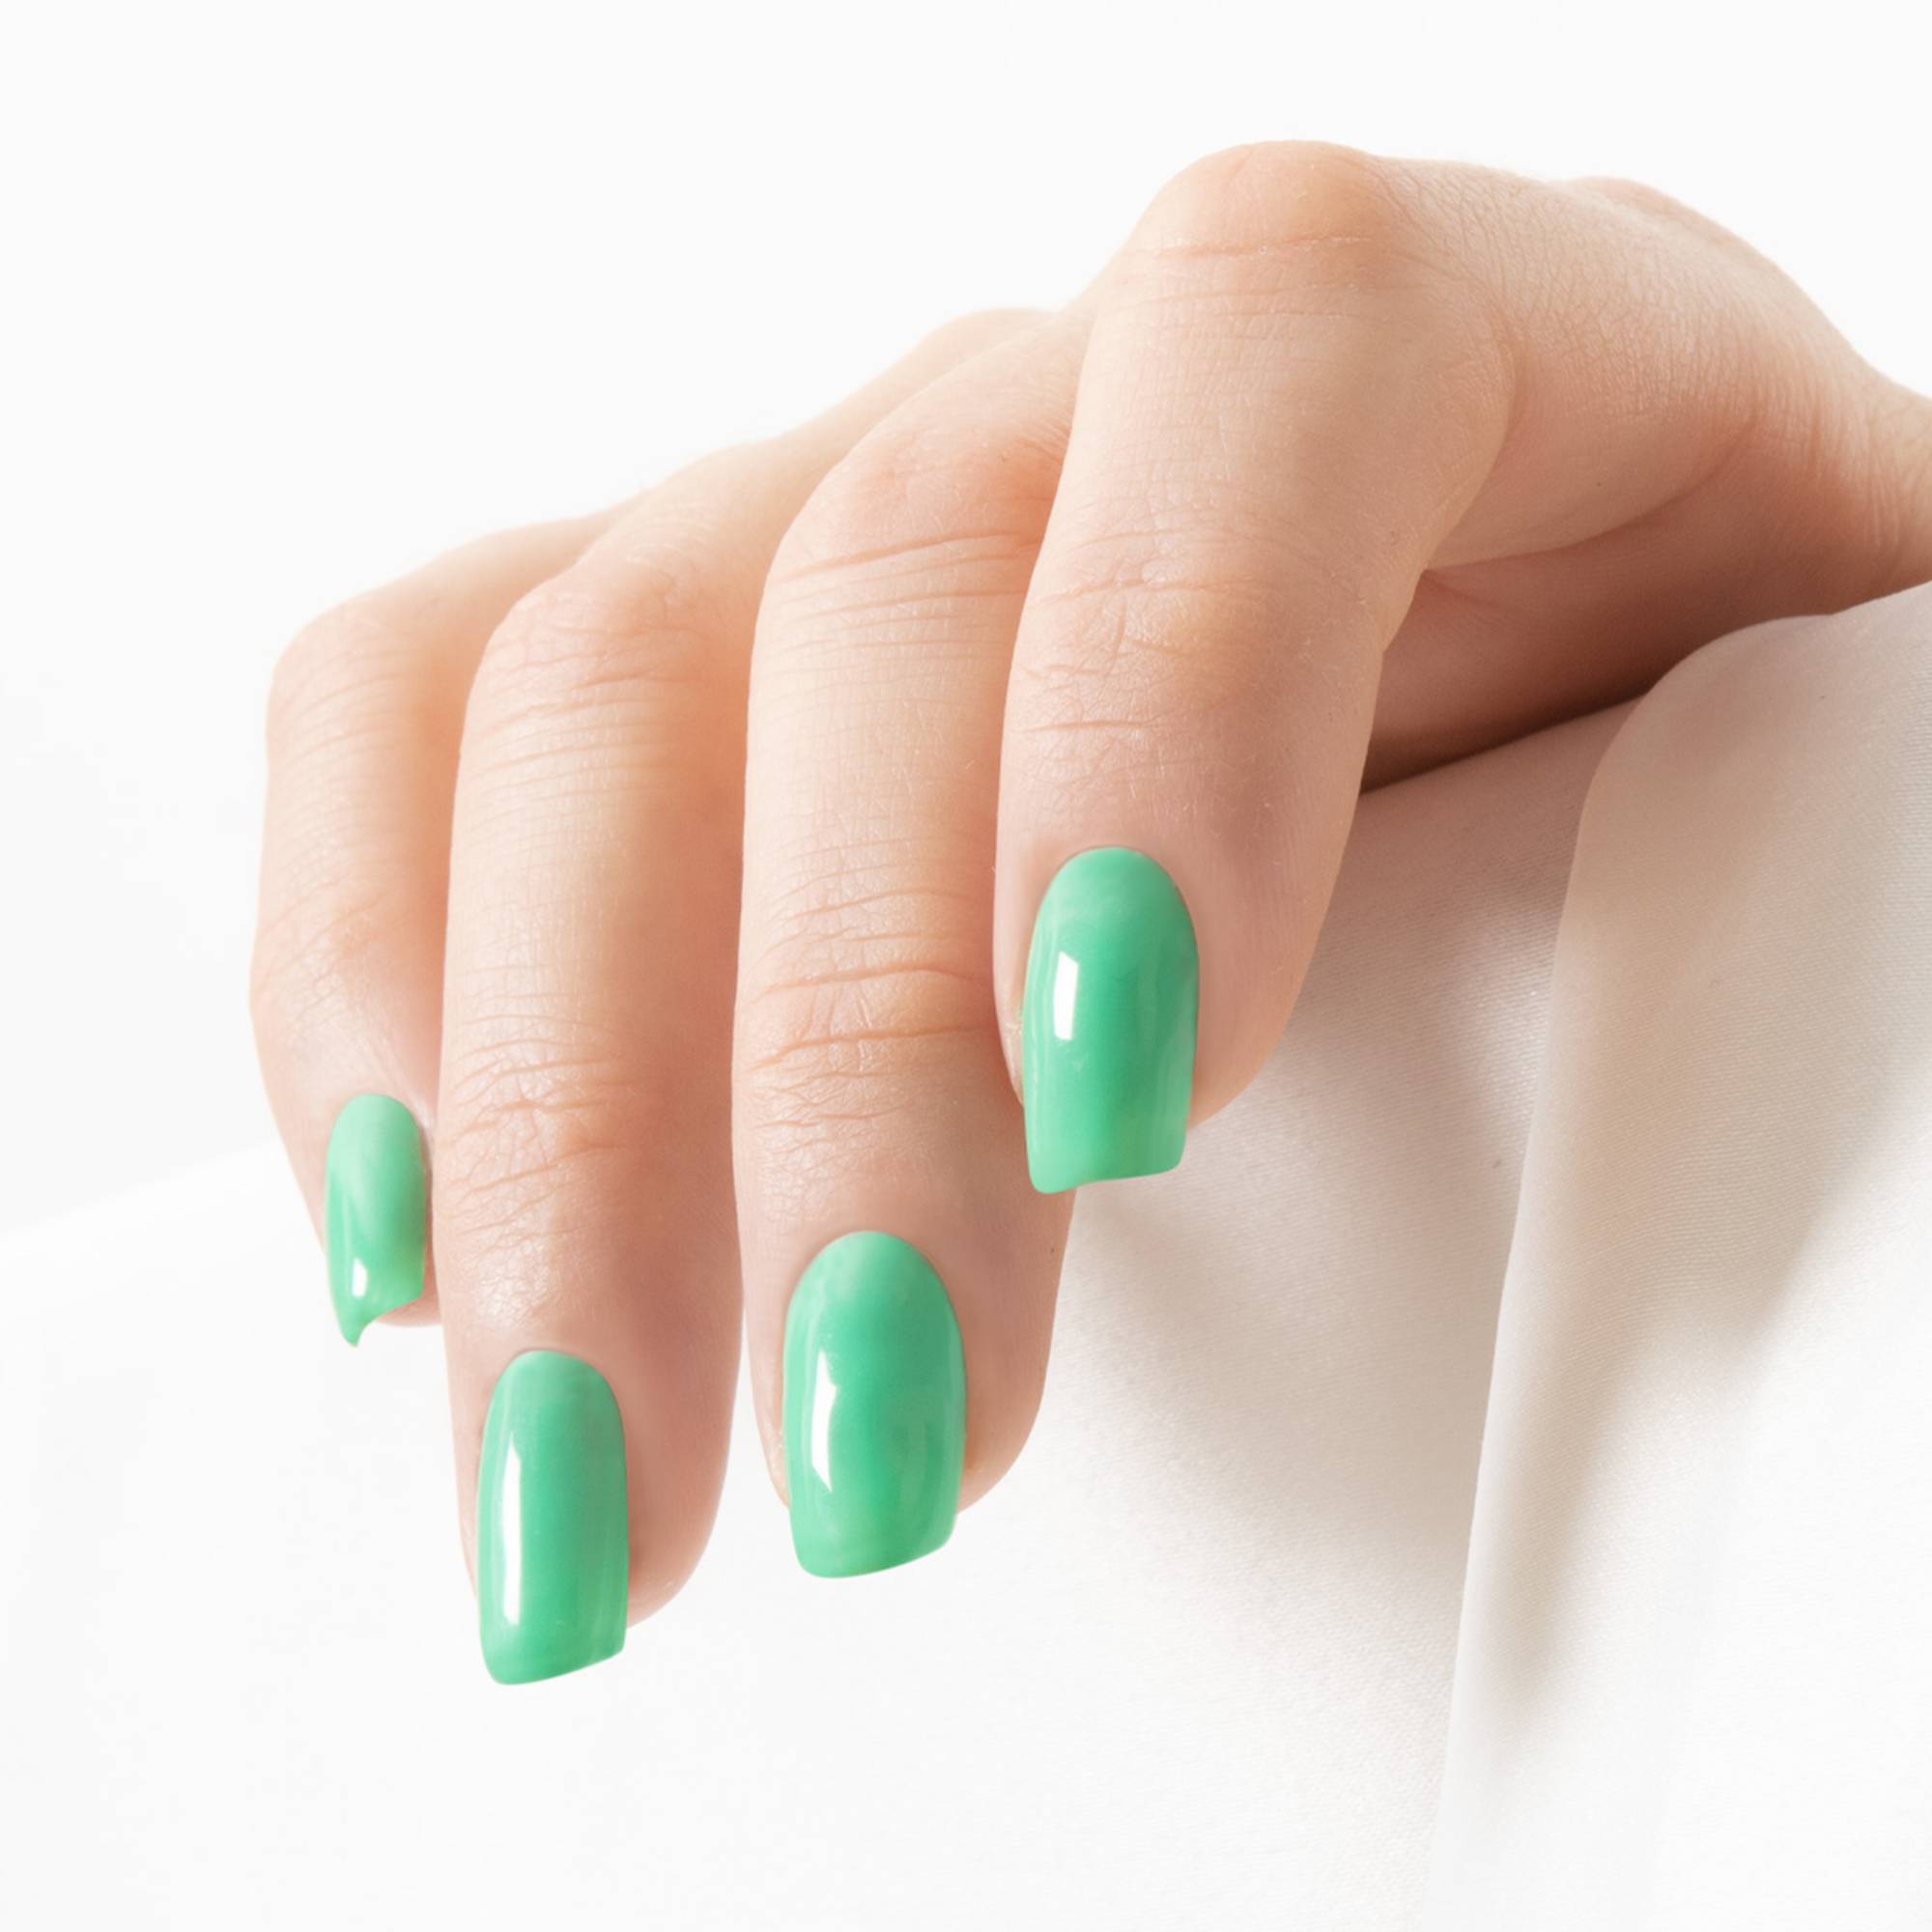 Vernis à ongles longue tenue Green LAK - Palmier de la marque Peggy Sage Contenance 10ml - 2